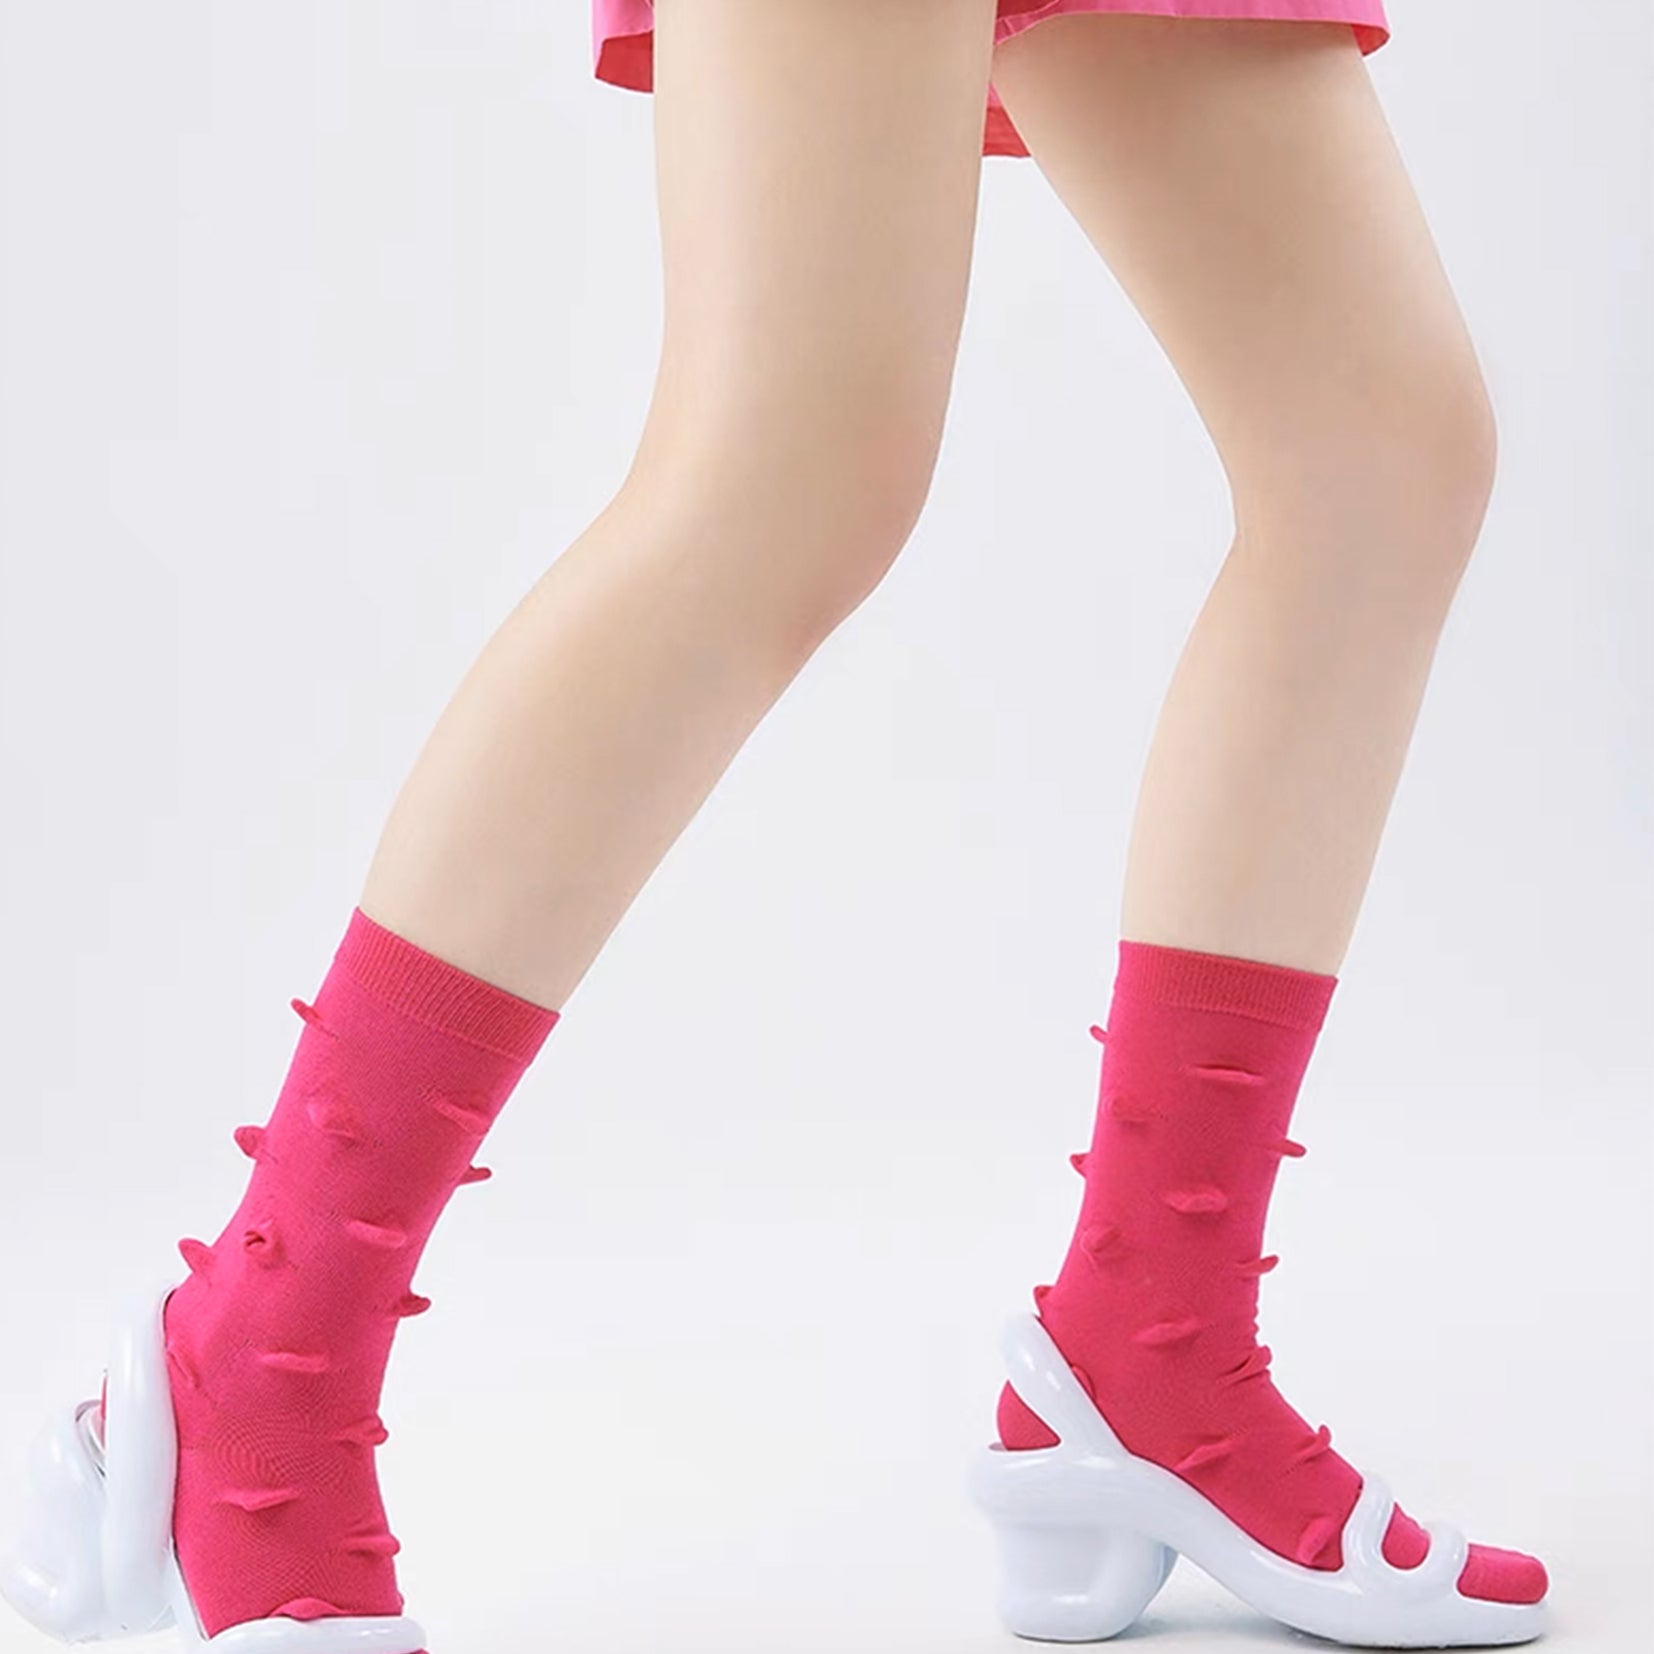 Hedgehog bumpy mid-calf sock - hot pink